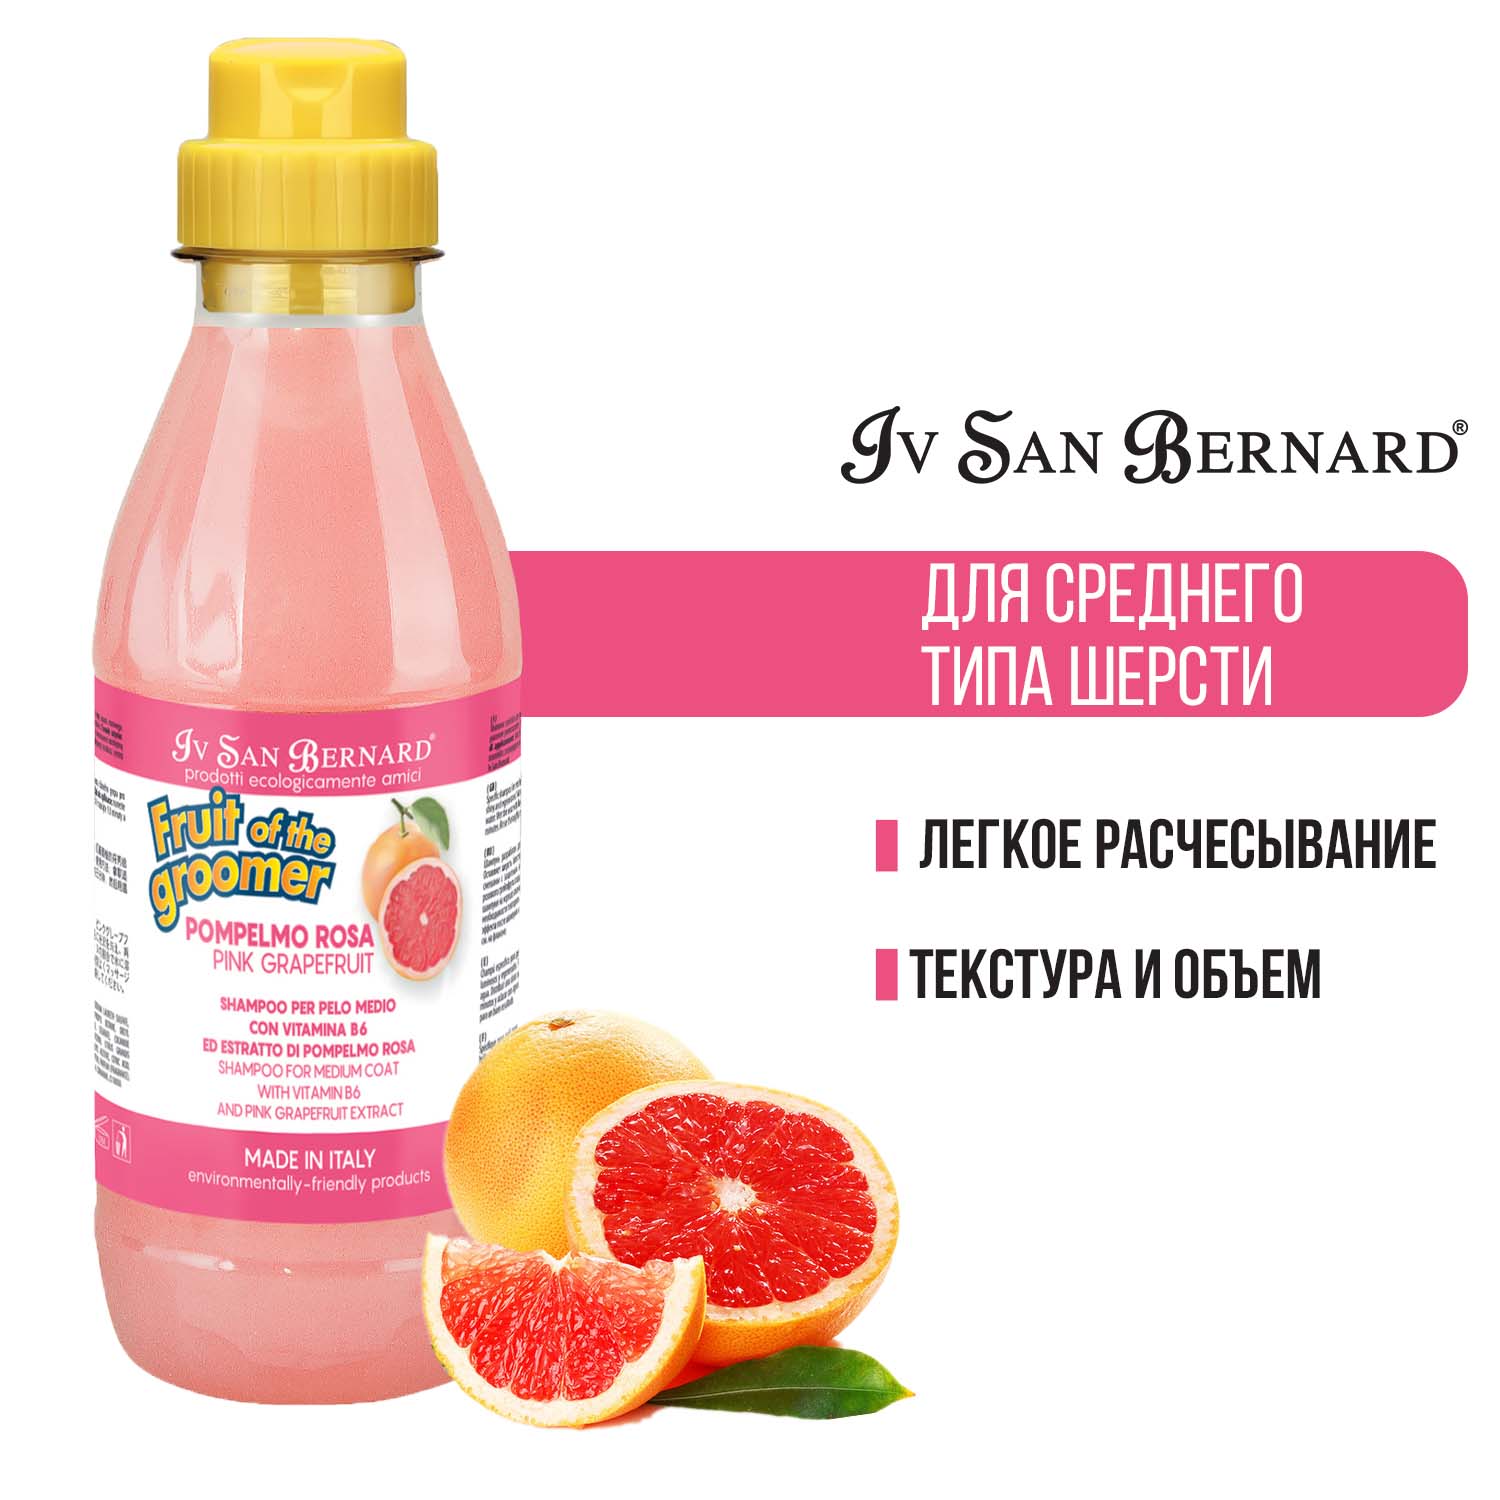 Шампунь Iv San Bernard Fruit of the Groomer Pink Grapefruit для шерсти средней длины с витаминами, для кошек и собак